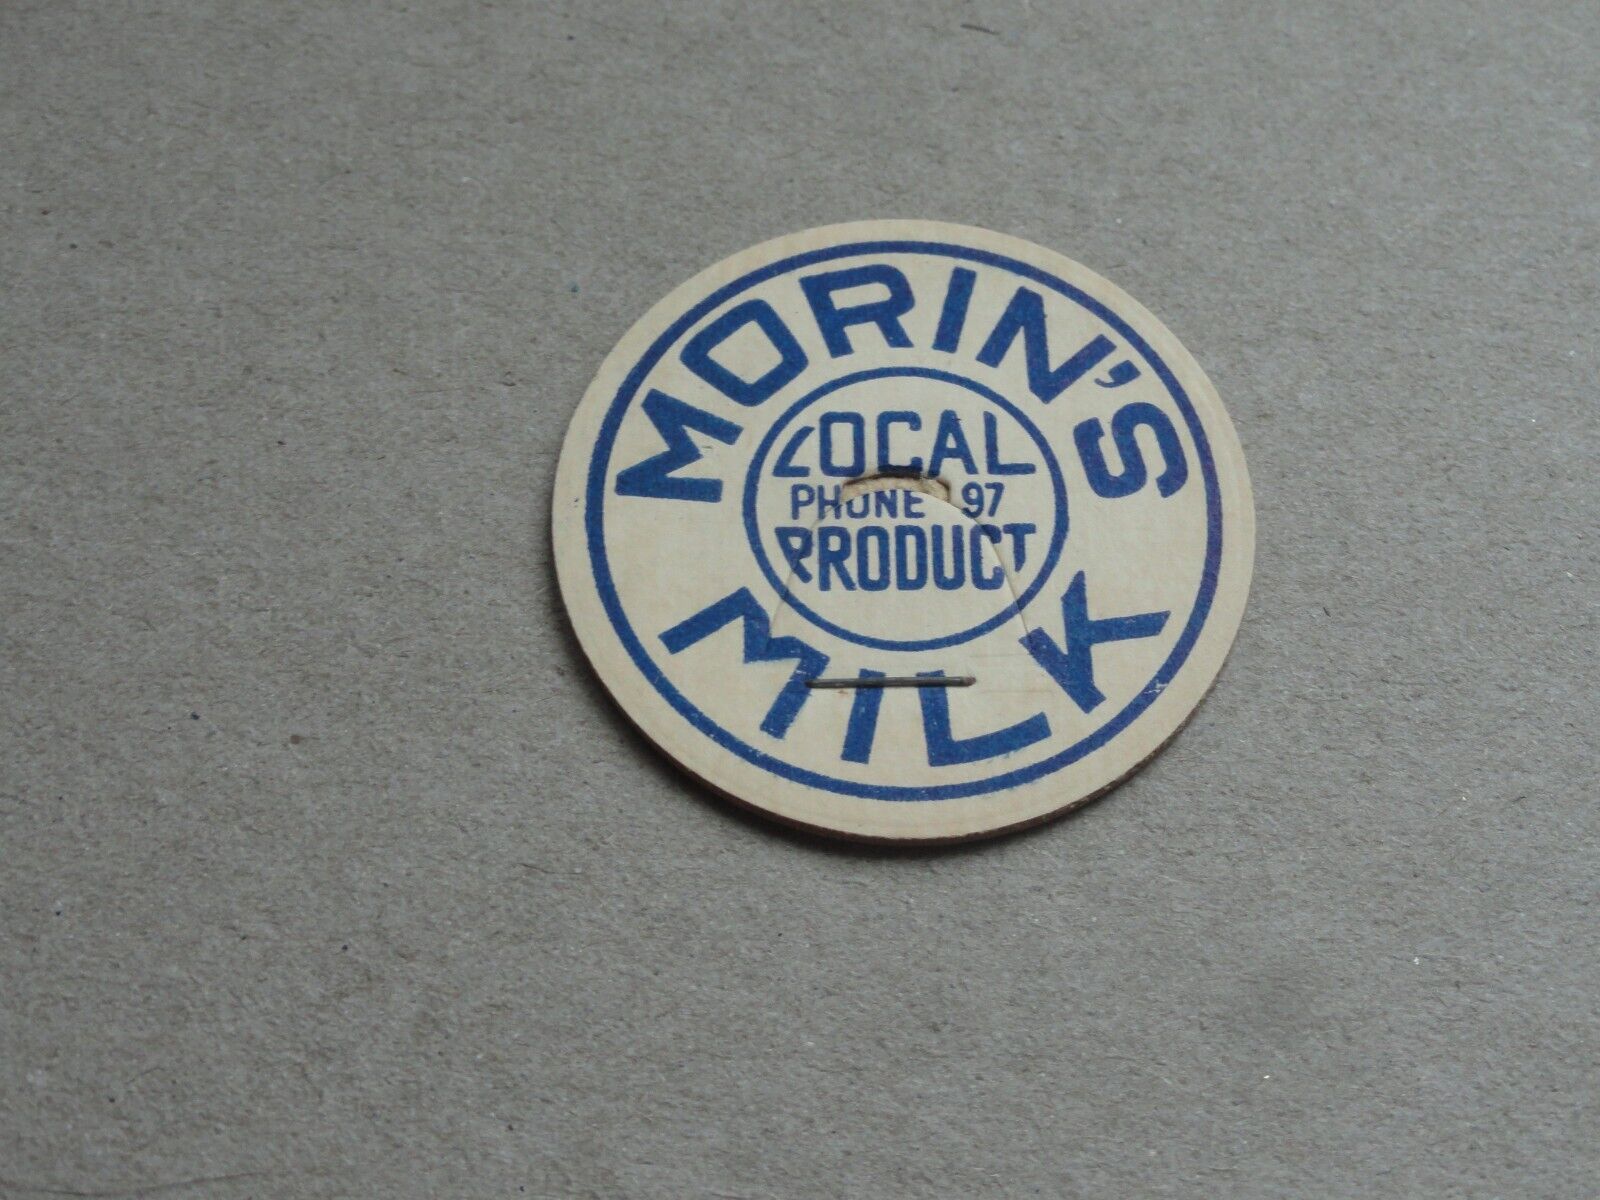 Vintage Morin's (2)  Milk bottle caps unused  Berlin N.H. rare find